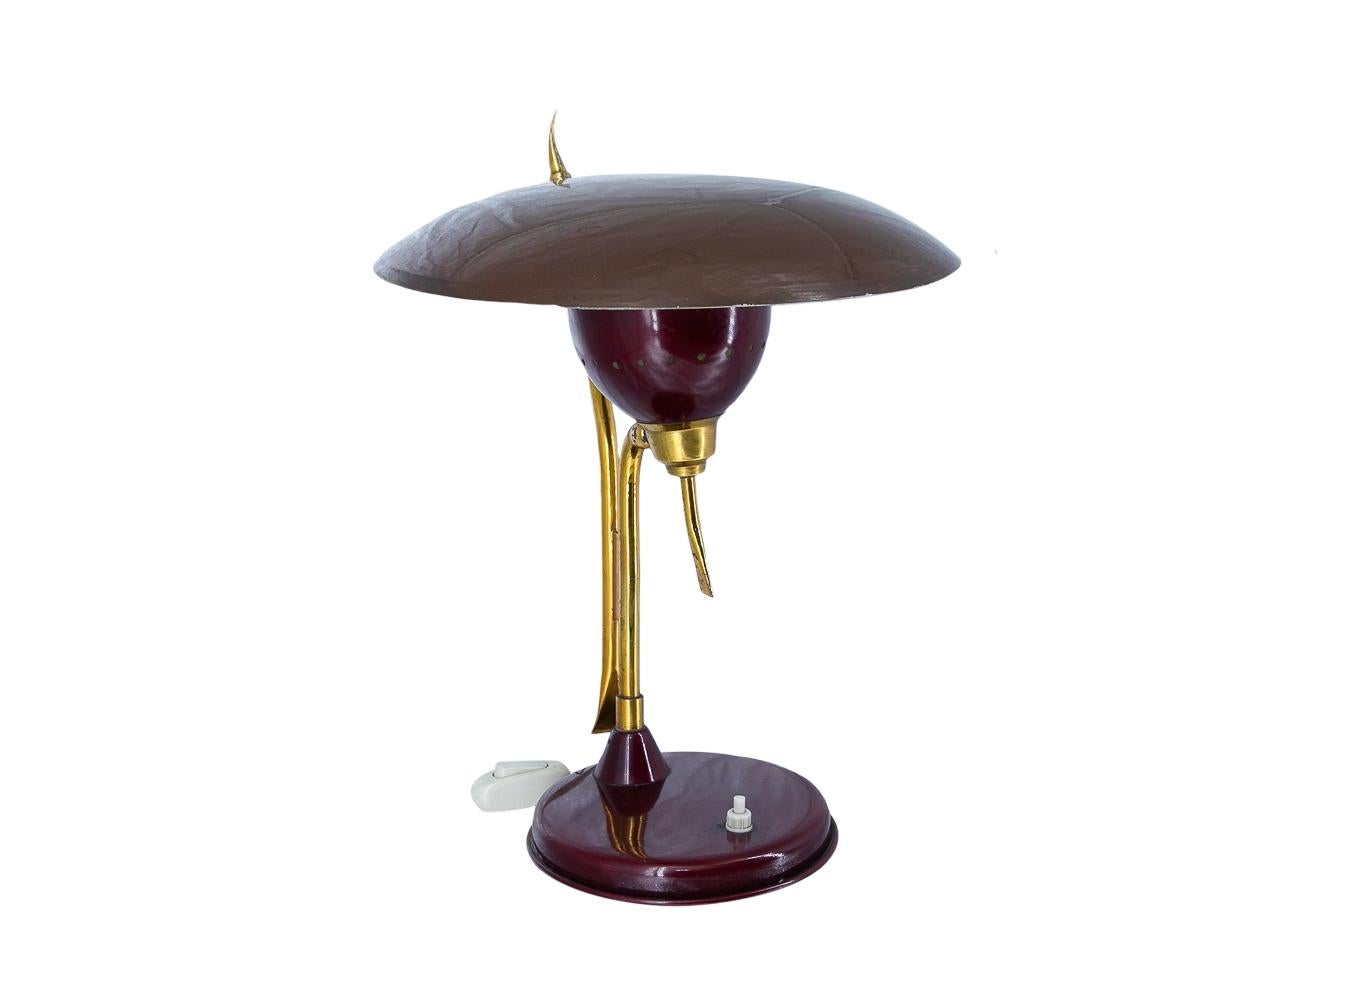 Lampe conçue par le célèbre designer Oscar Torlasco, lauréat du Compasso D'oro en 1959.
Lampe de bureau / lampe de table, couleur vin avec abat-jour inclinable.
Fabriqué en Italie vers les années 1950, 1950-1959 par la célèbre société Lumen
Prise